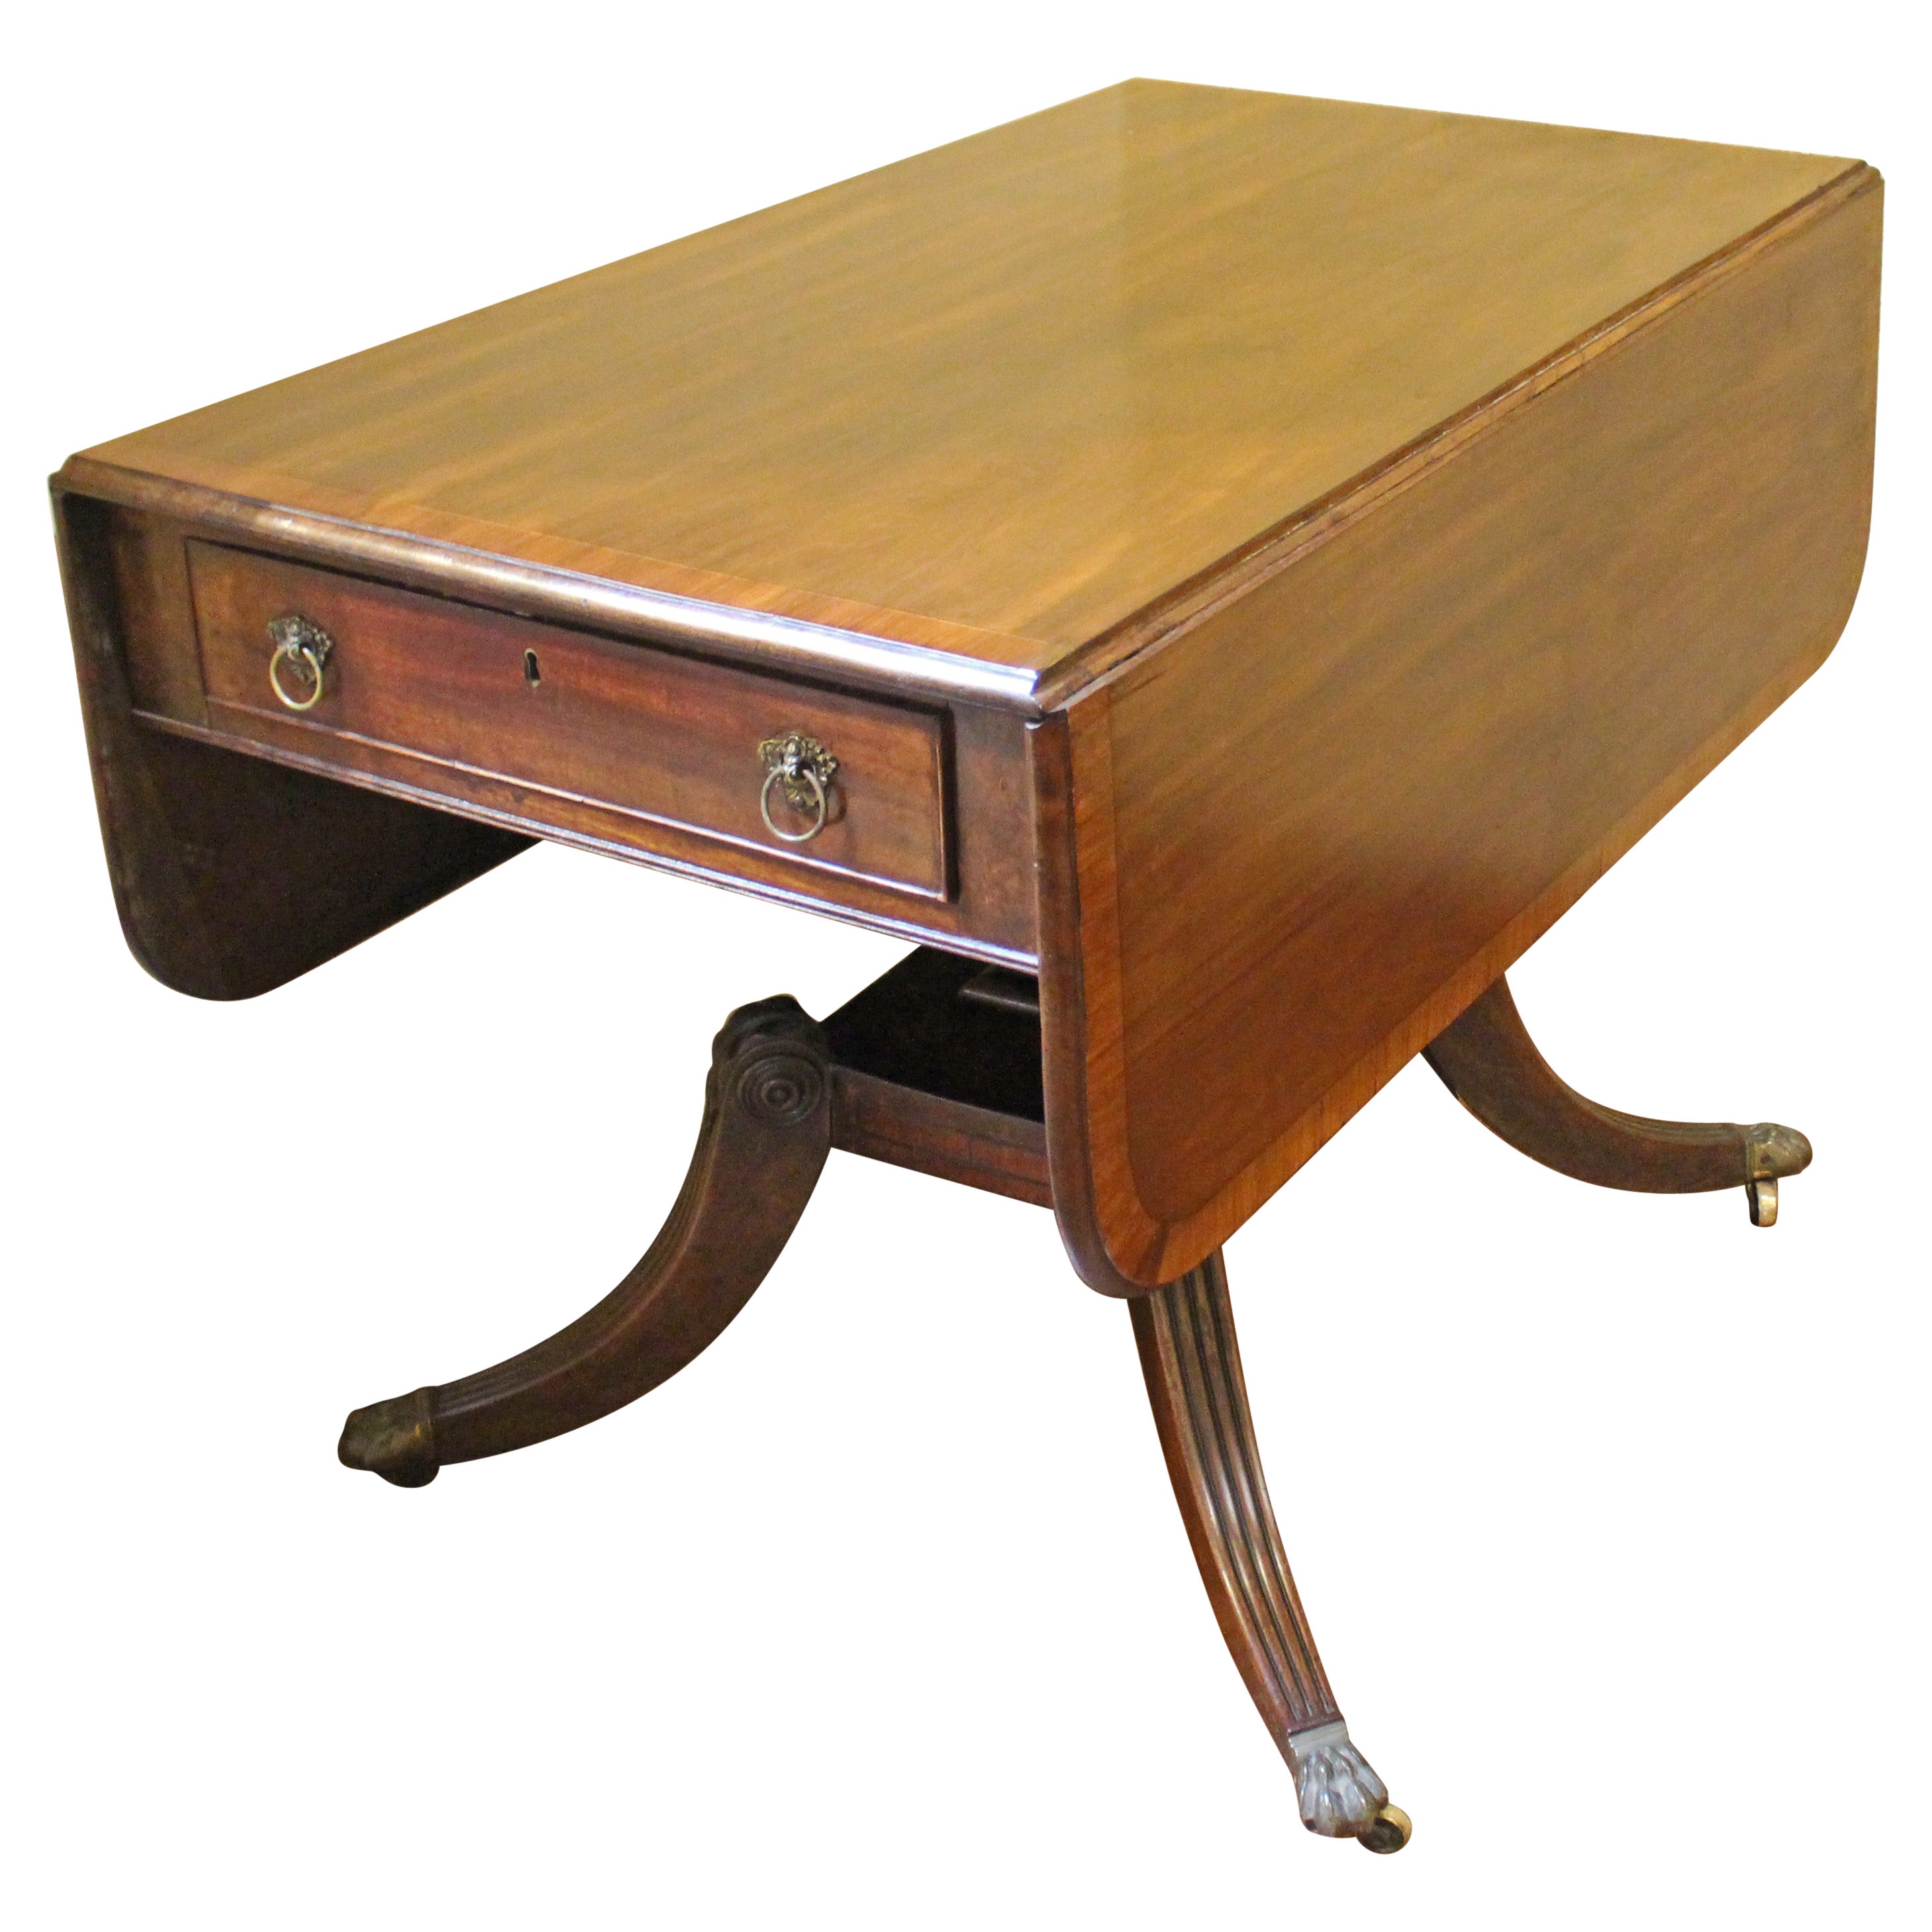 Englischer Pembroke-Tisch aus dem frühen 19. Jahrhundert